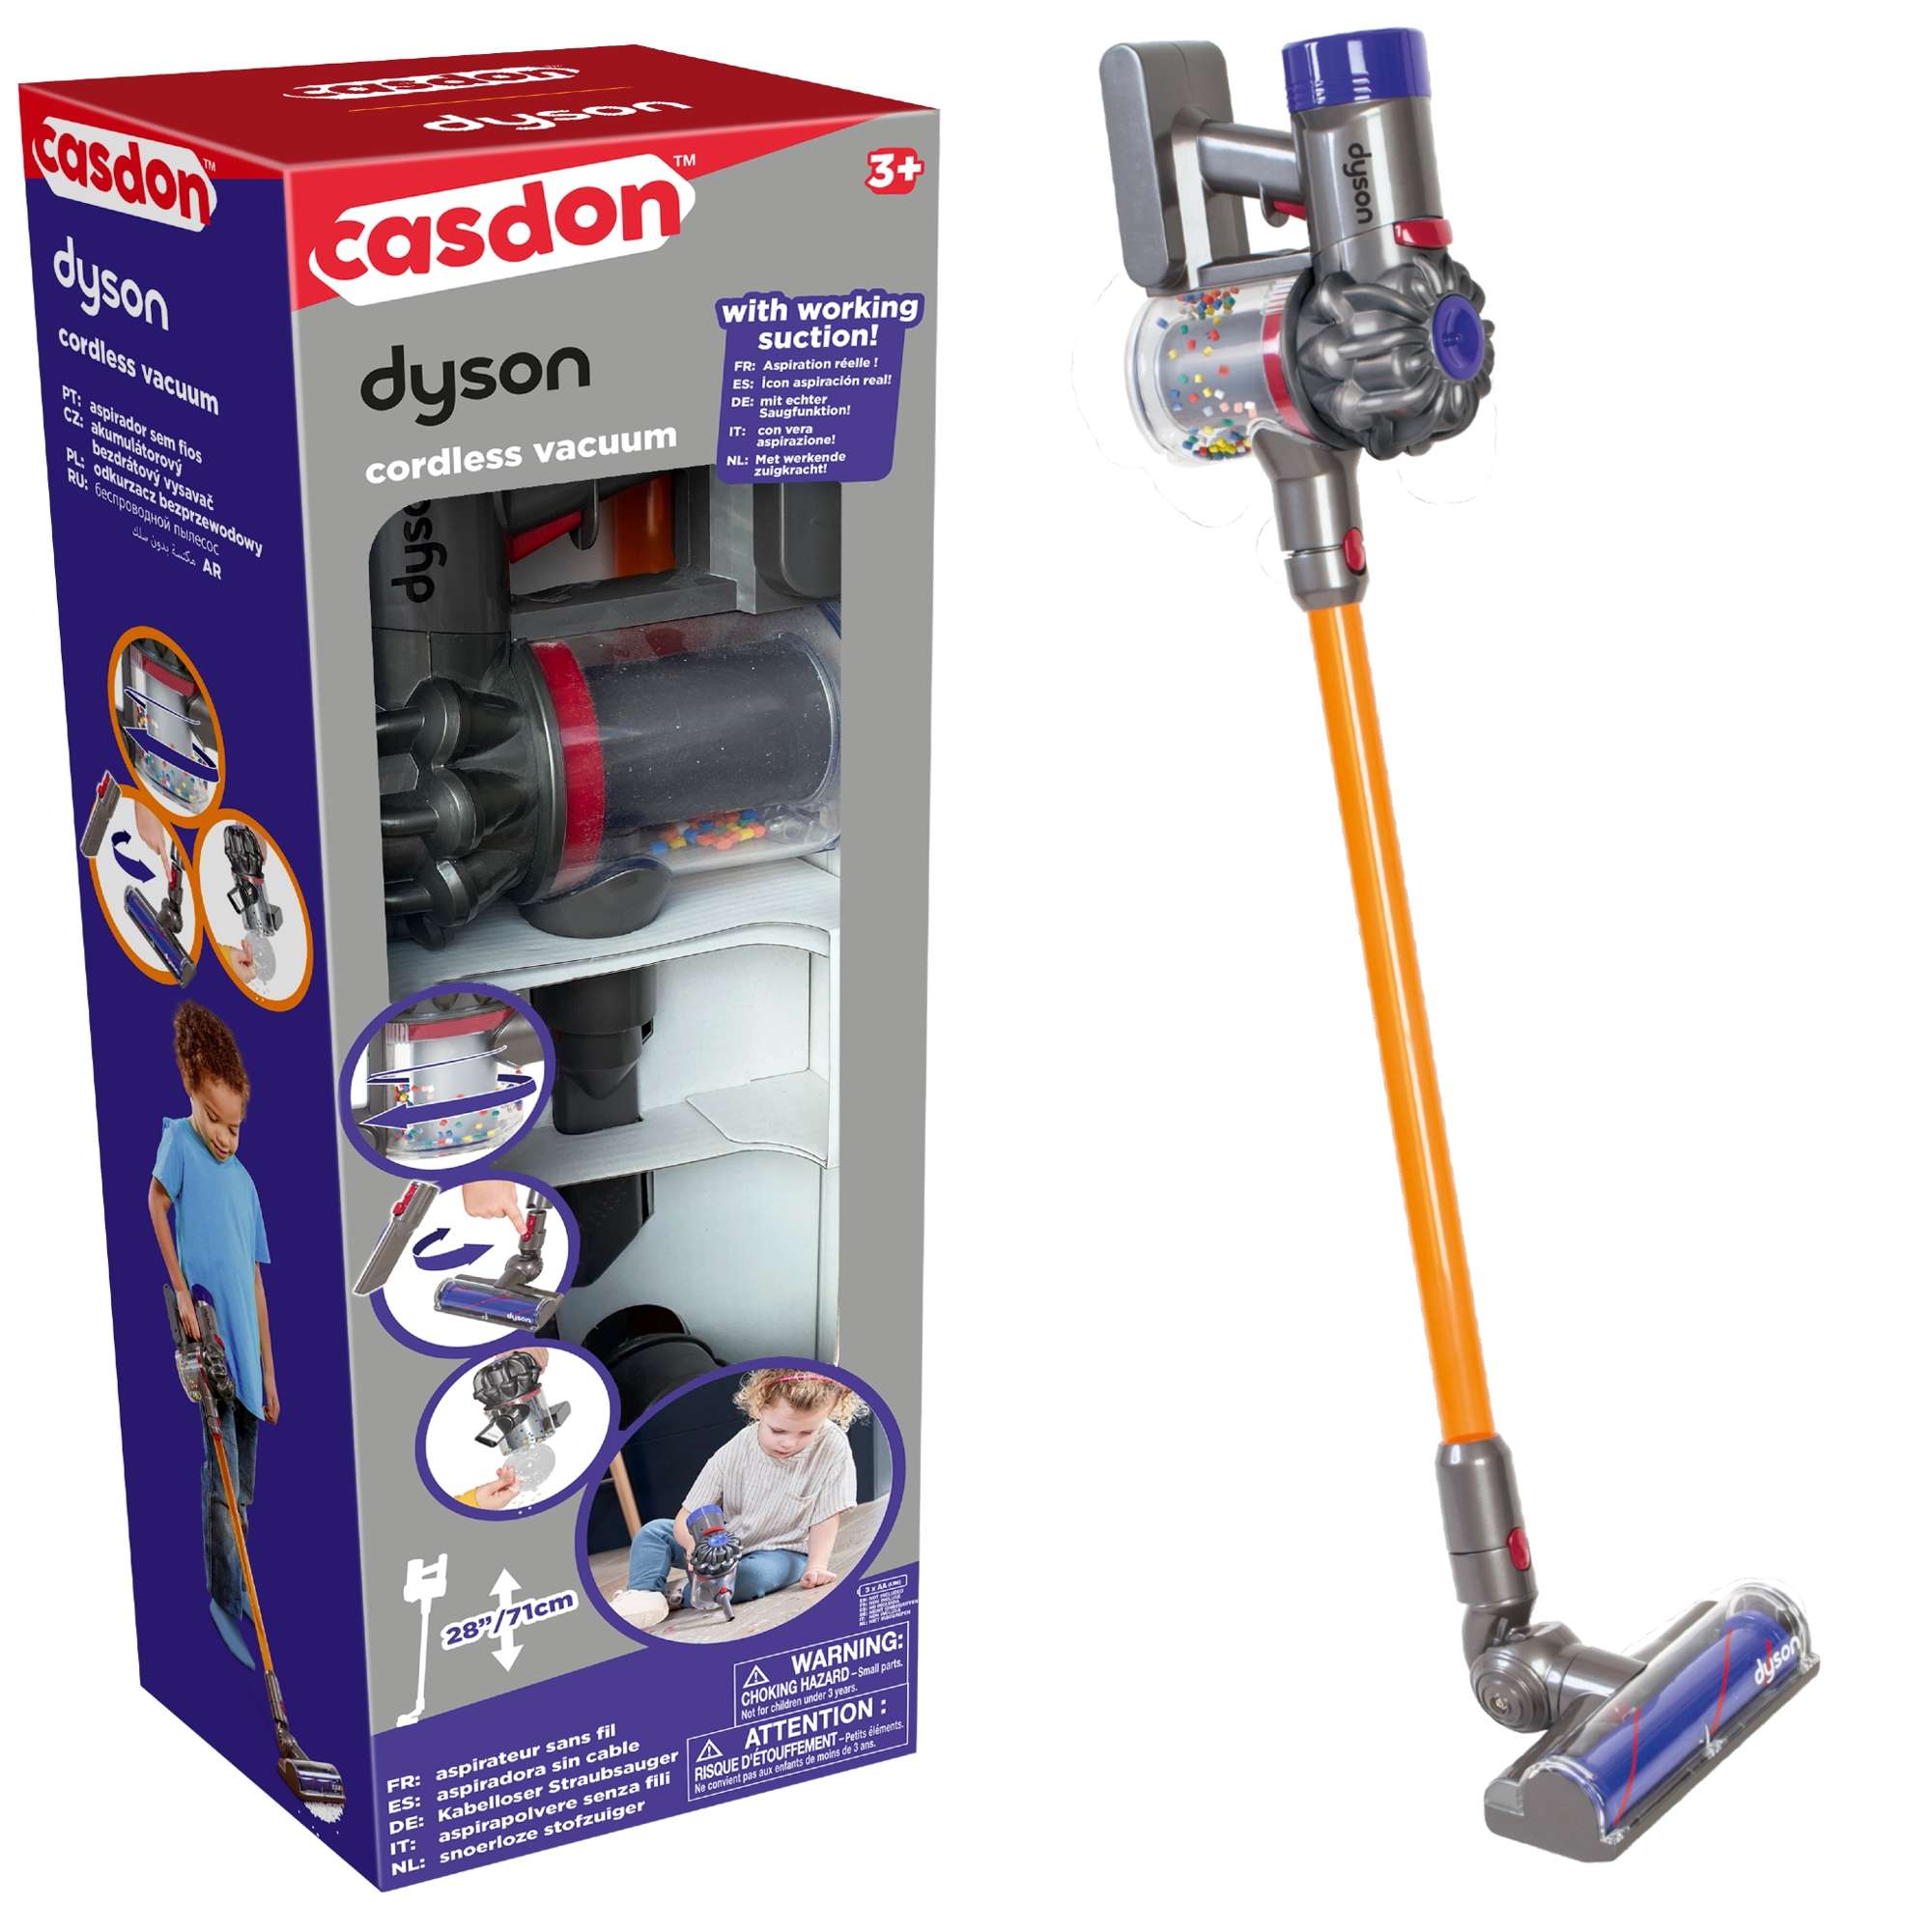 Casdon Dyson interaktive Vakuum Spielzeug Staubsaug für Kinder Upright  Cordless